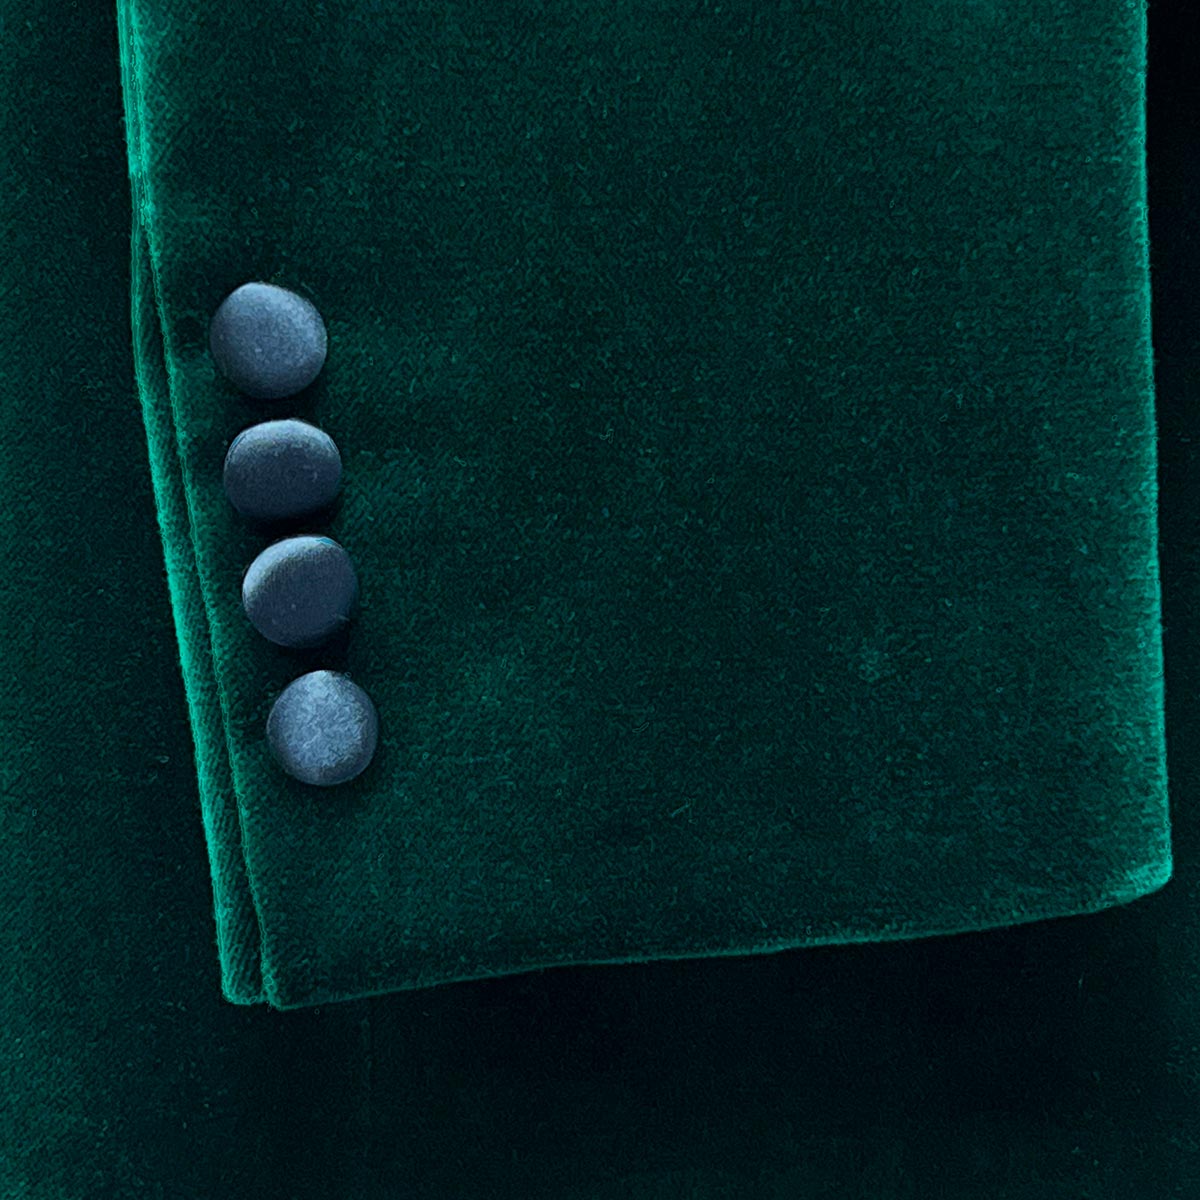 Elegant green velvet tuxedo dinner jacket back view